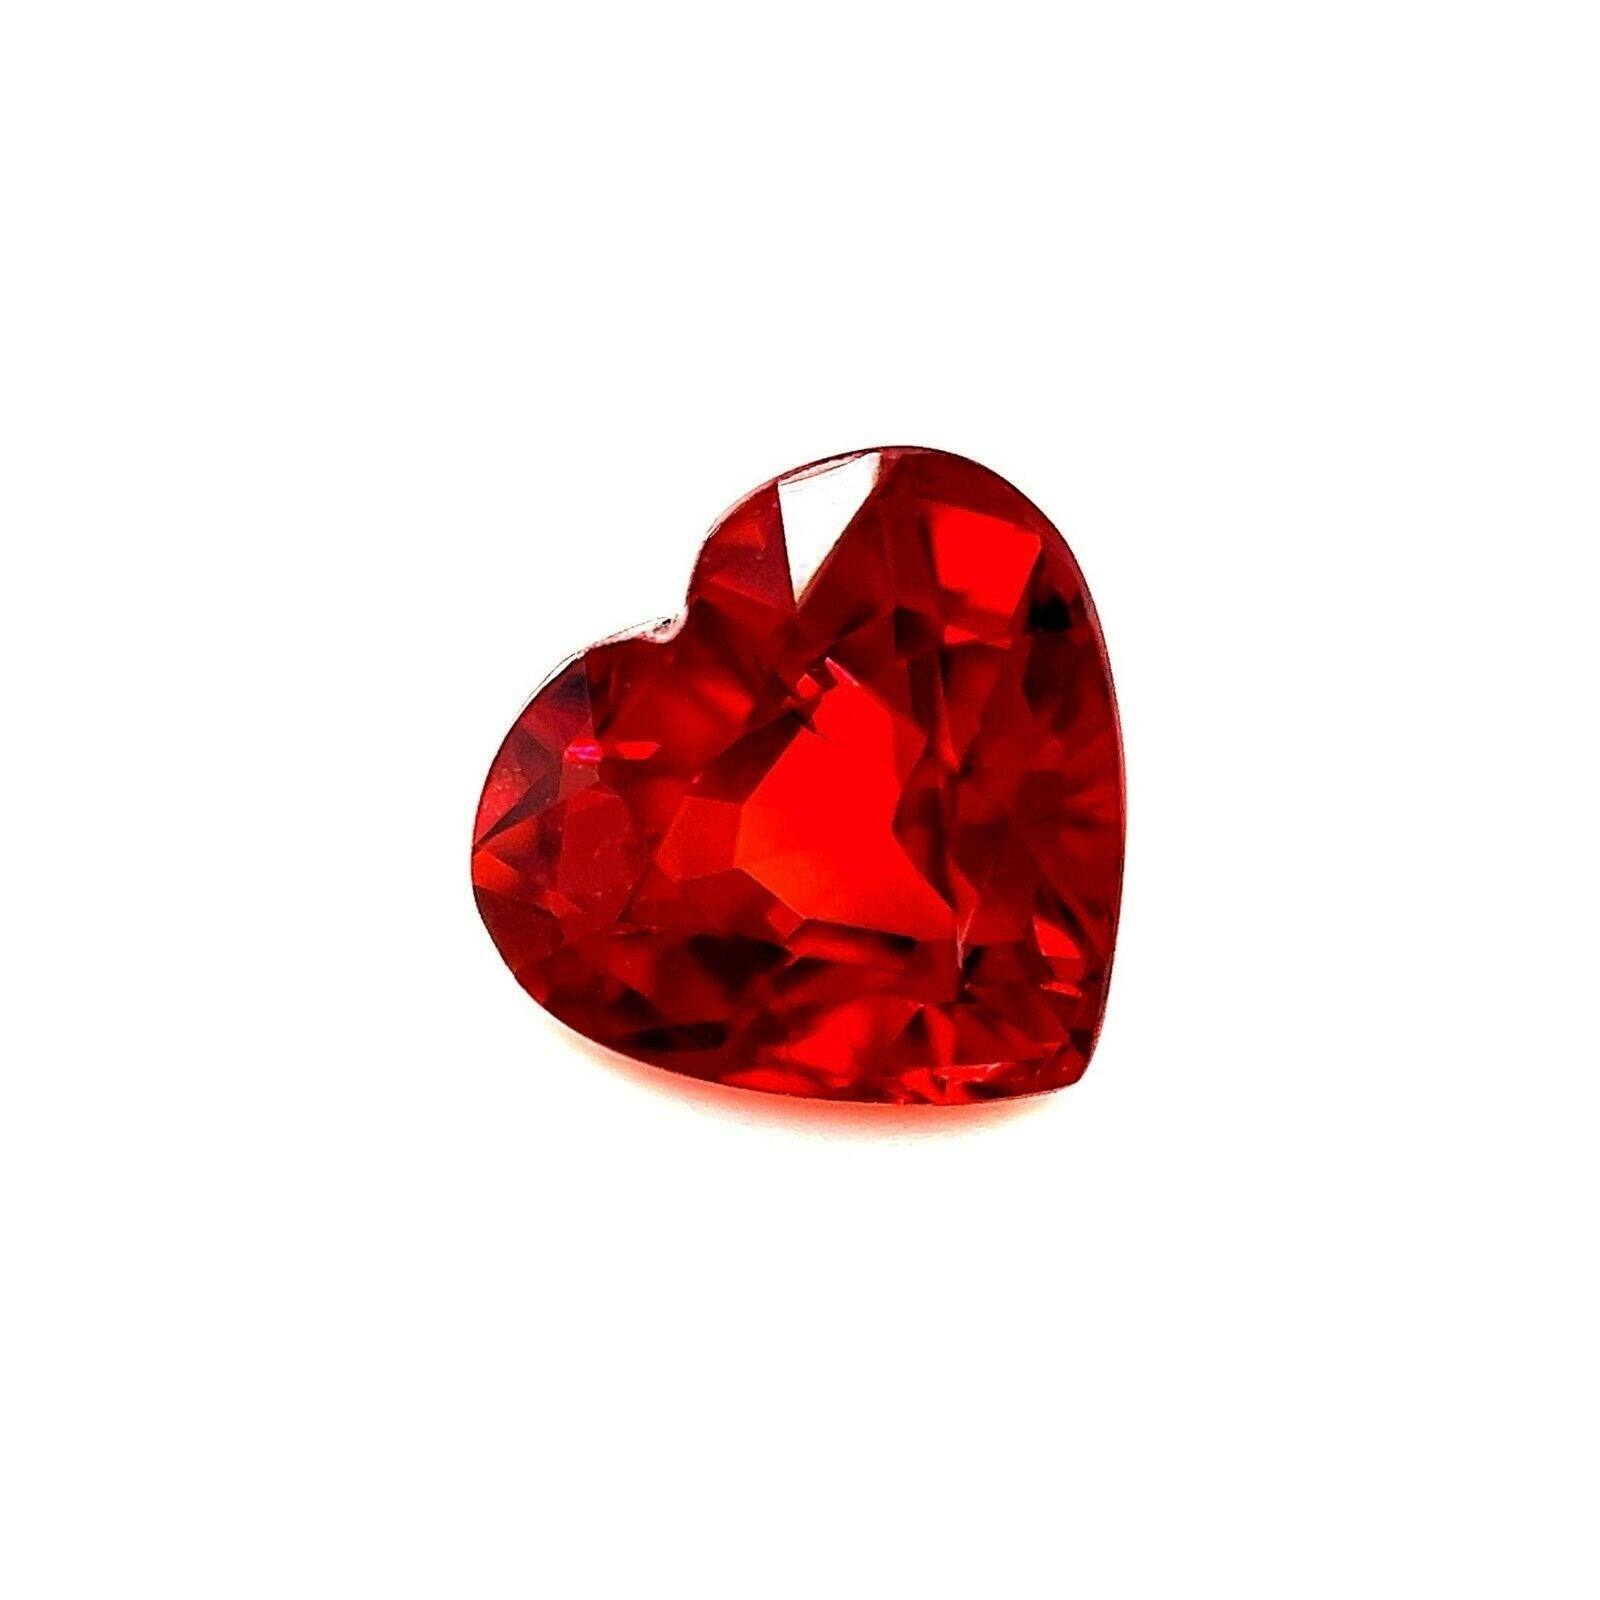 Fine pierre précieuse non sertie, grenat spessartine rouge vif et orange vif taille cœur de 6,2 x 5,7 mm